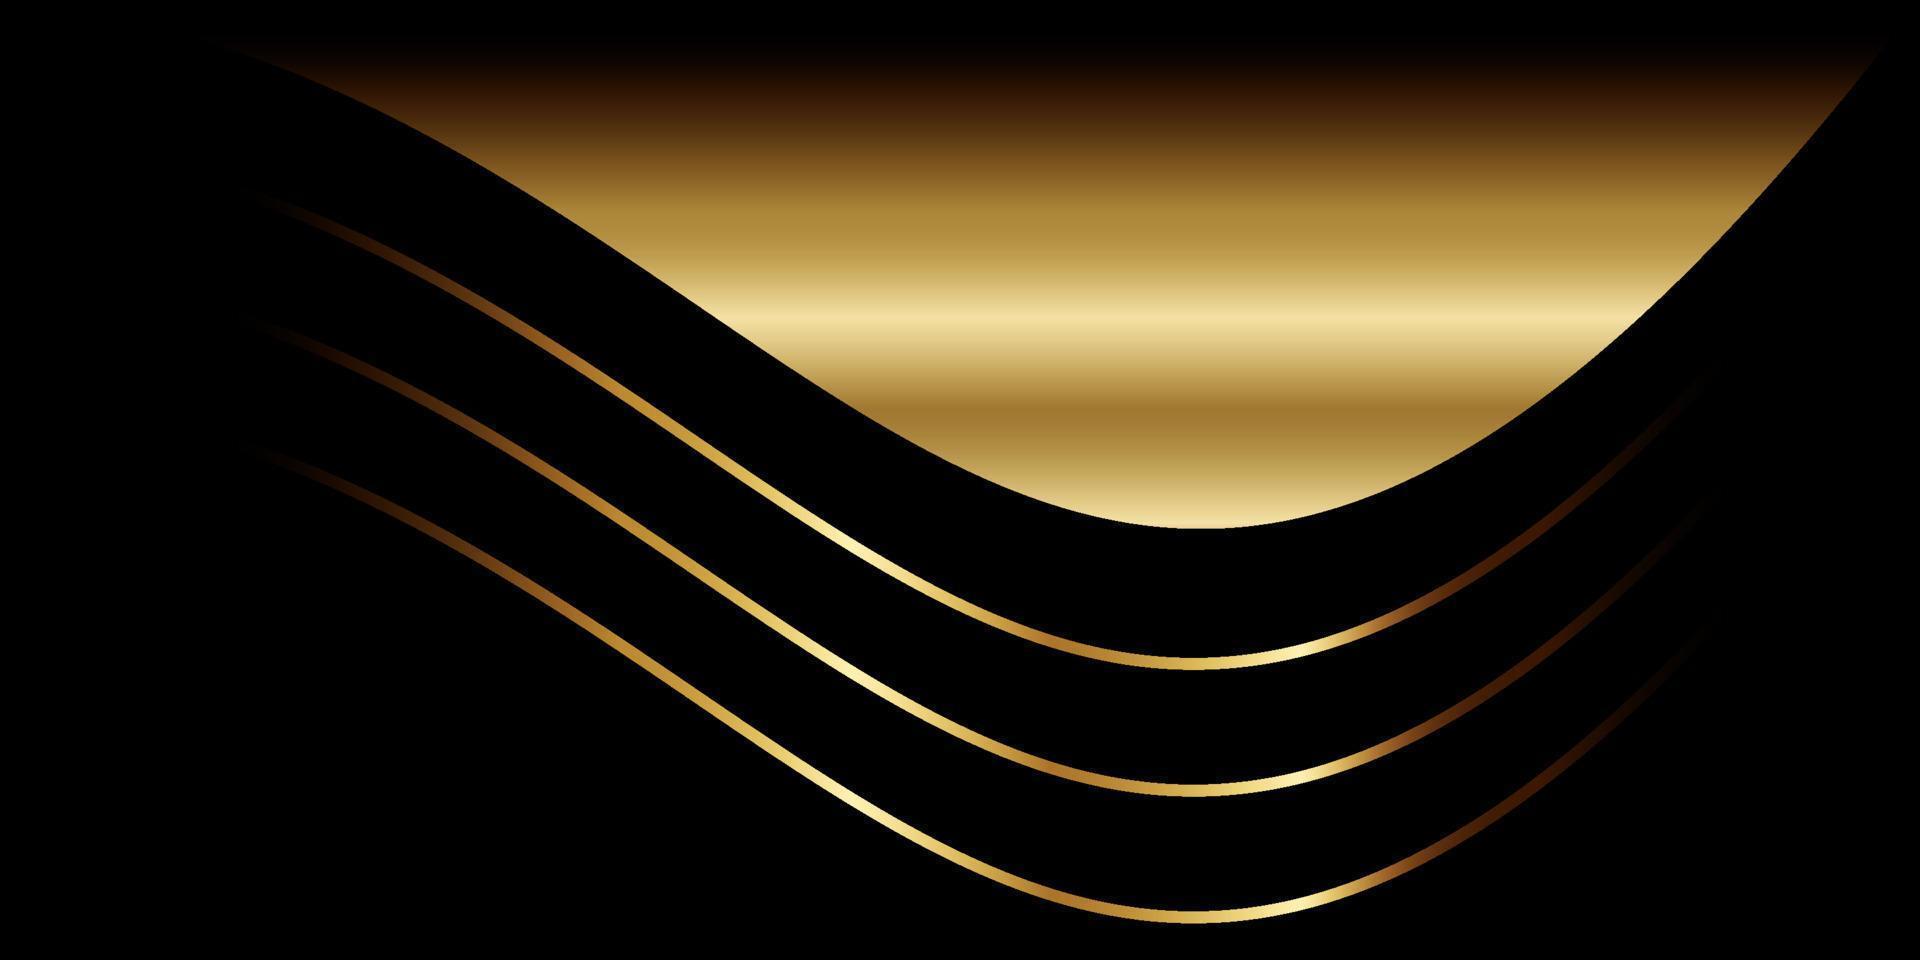 forma arredondada elegante com ouro brilhante vetor